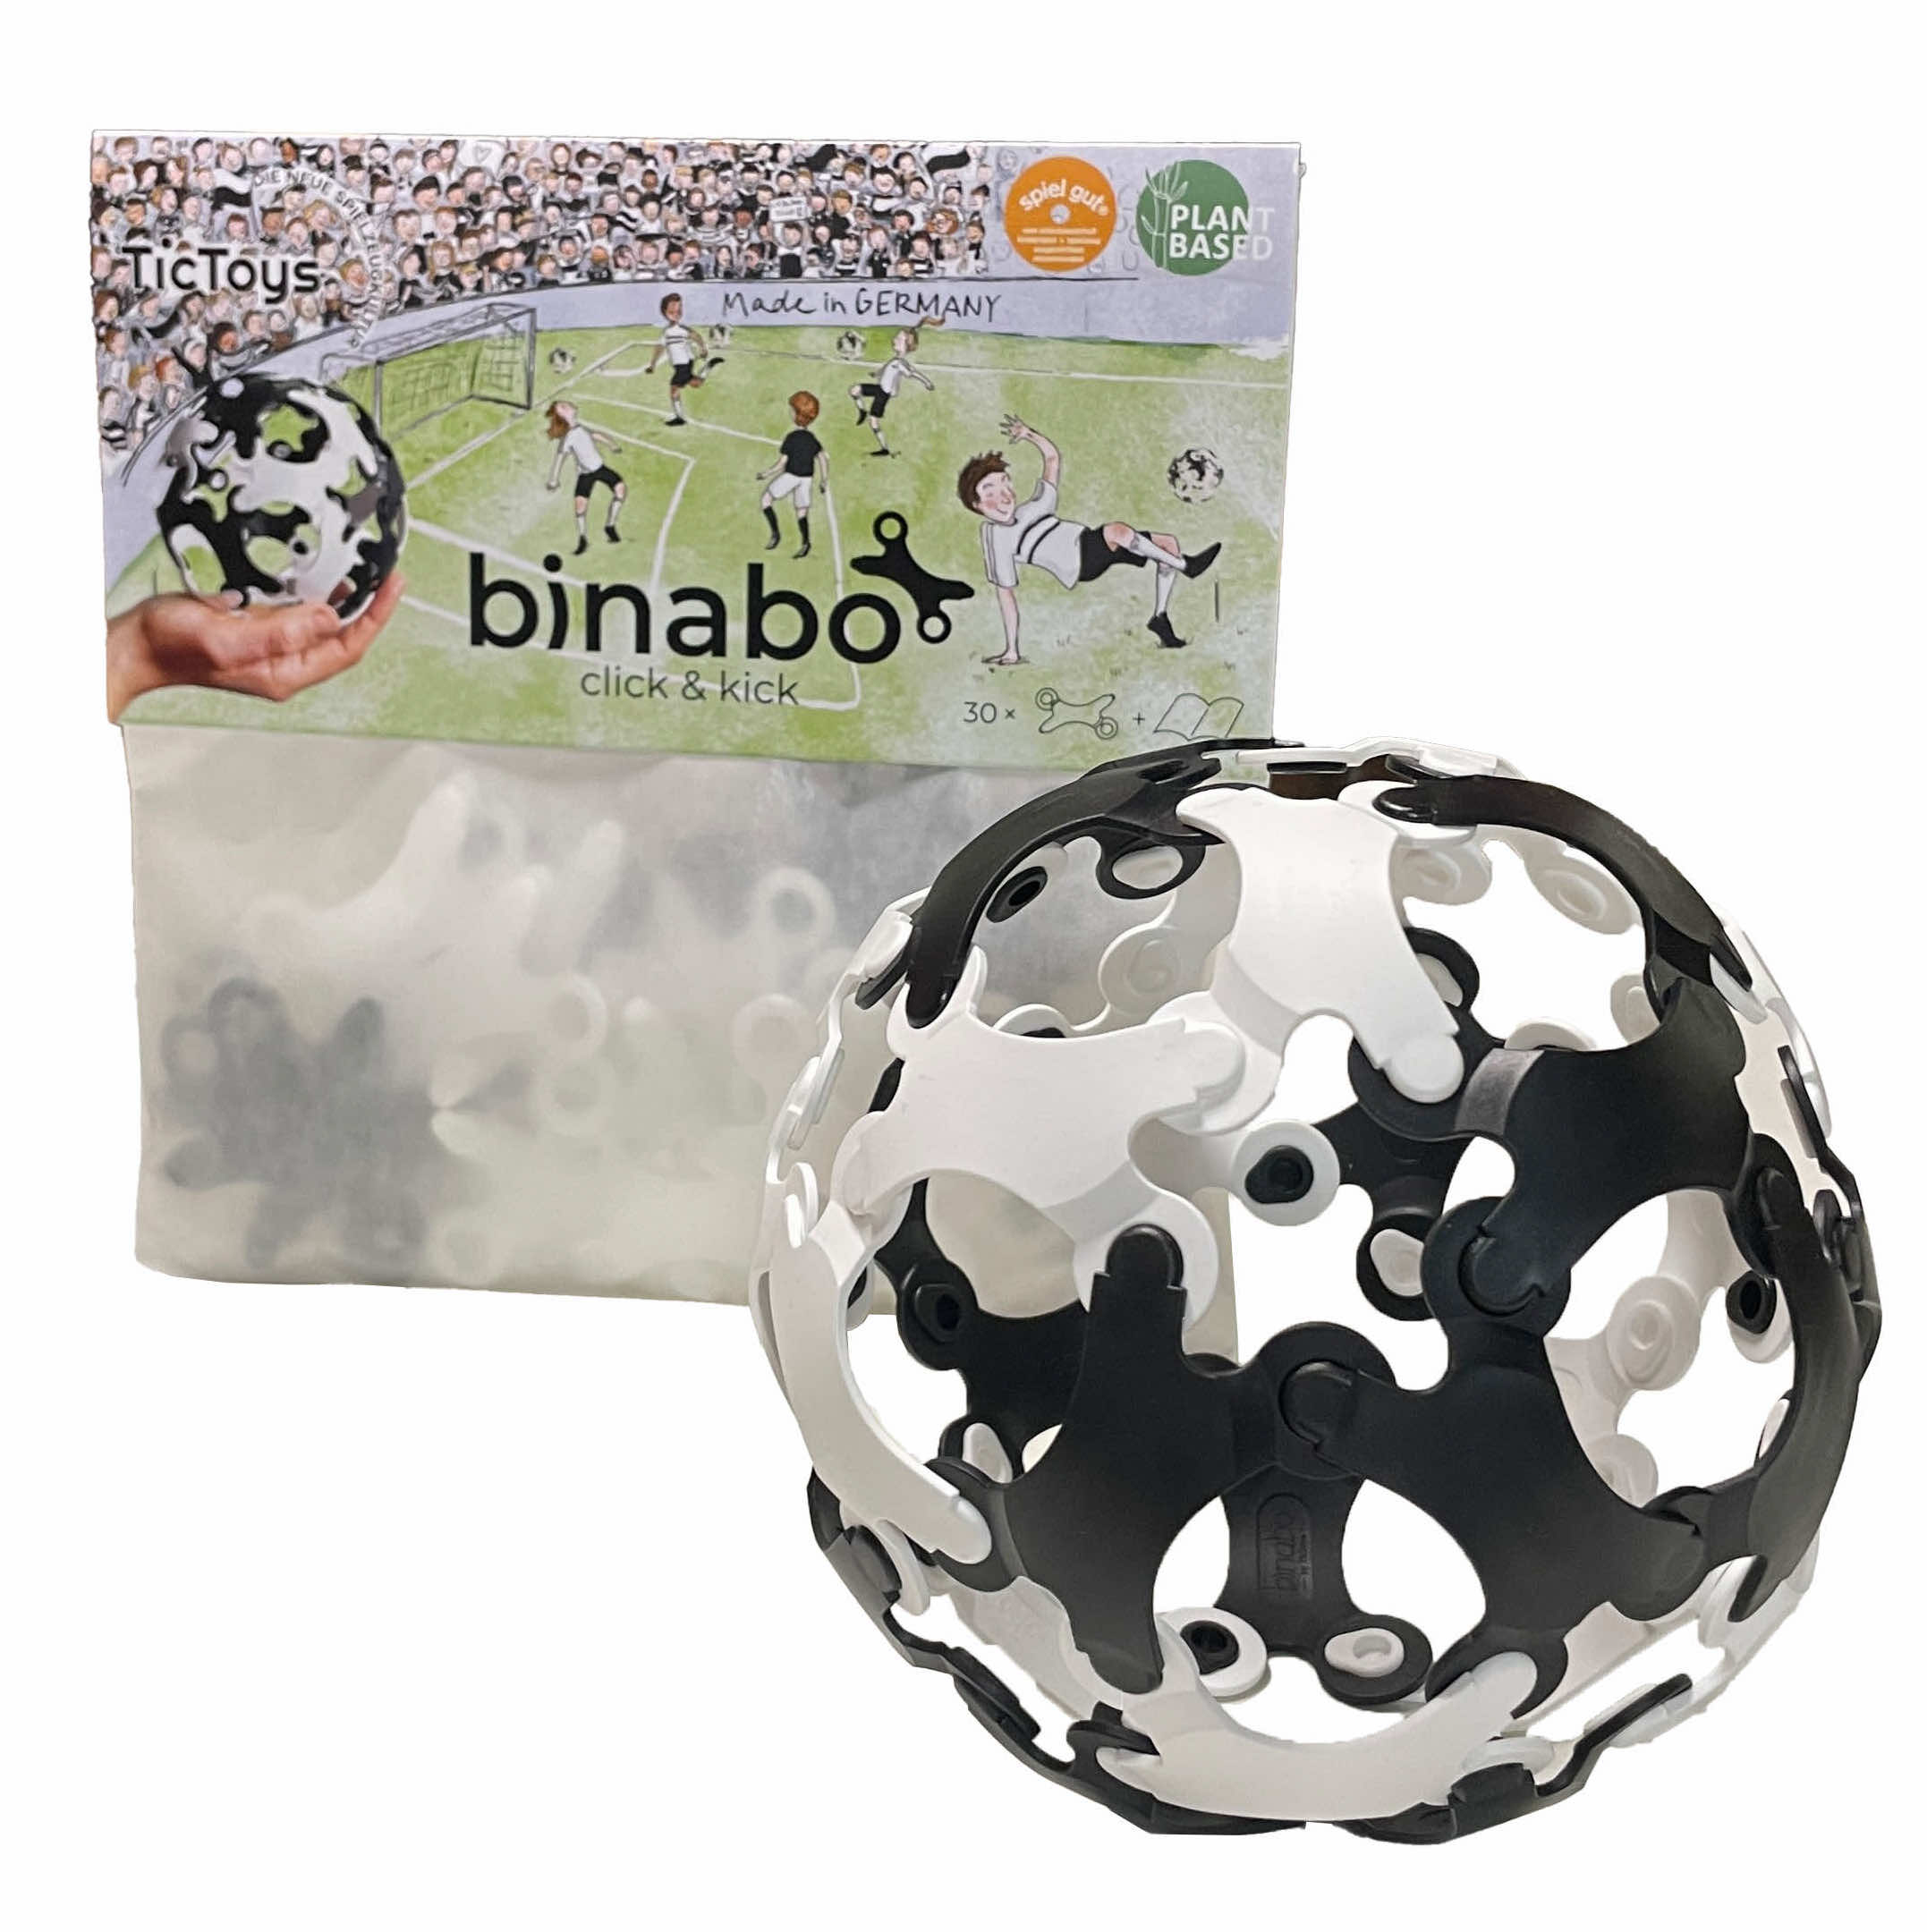 Binabo „click & kick“ schwarz & weiß